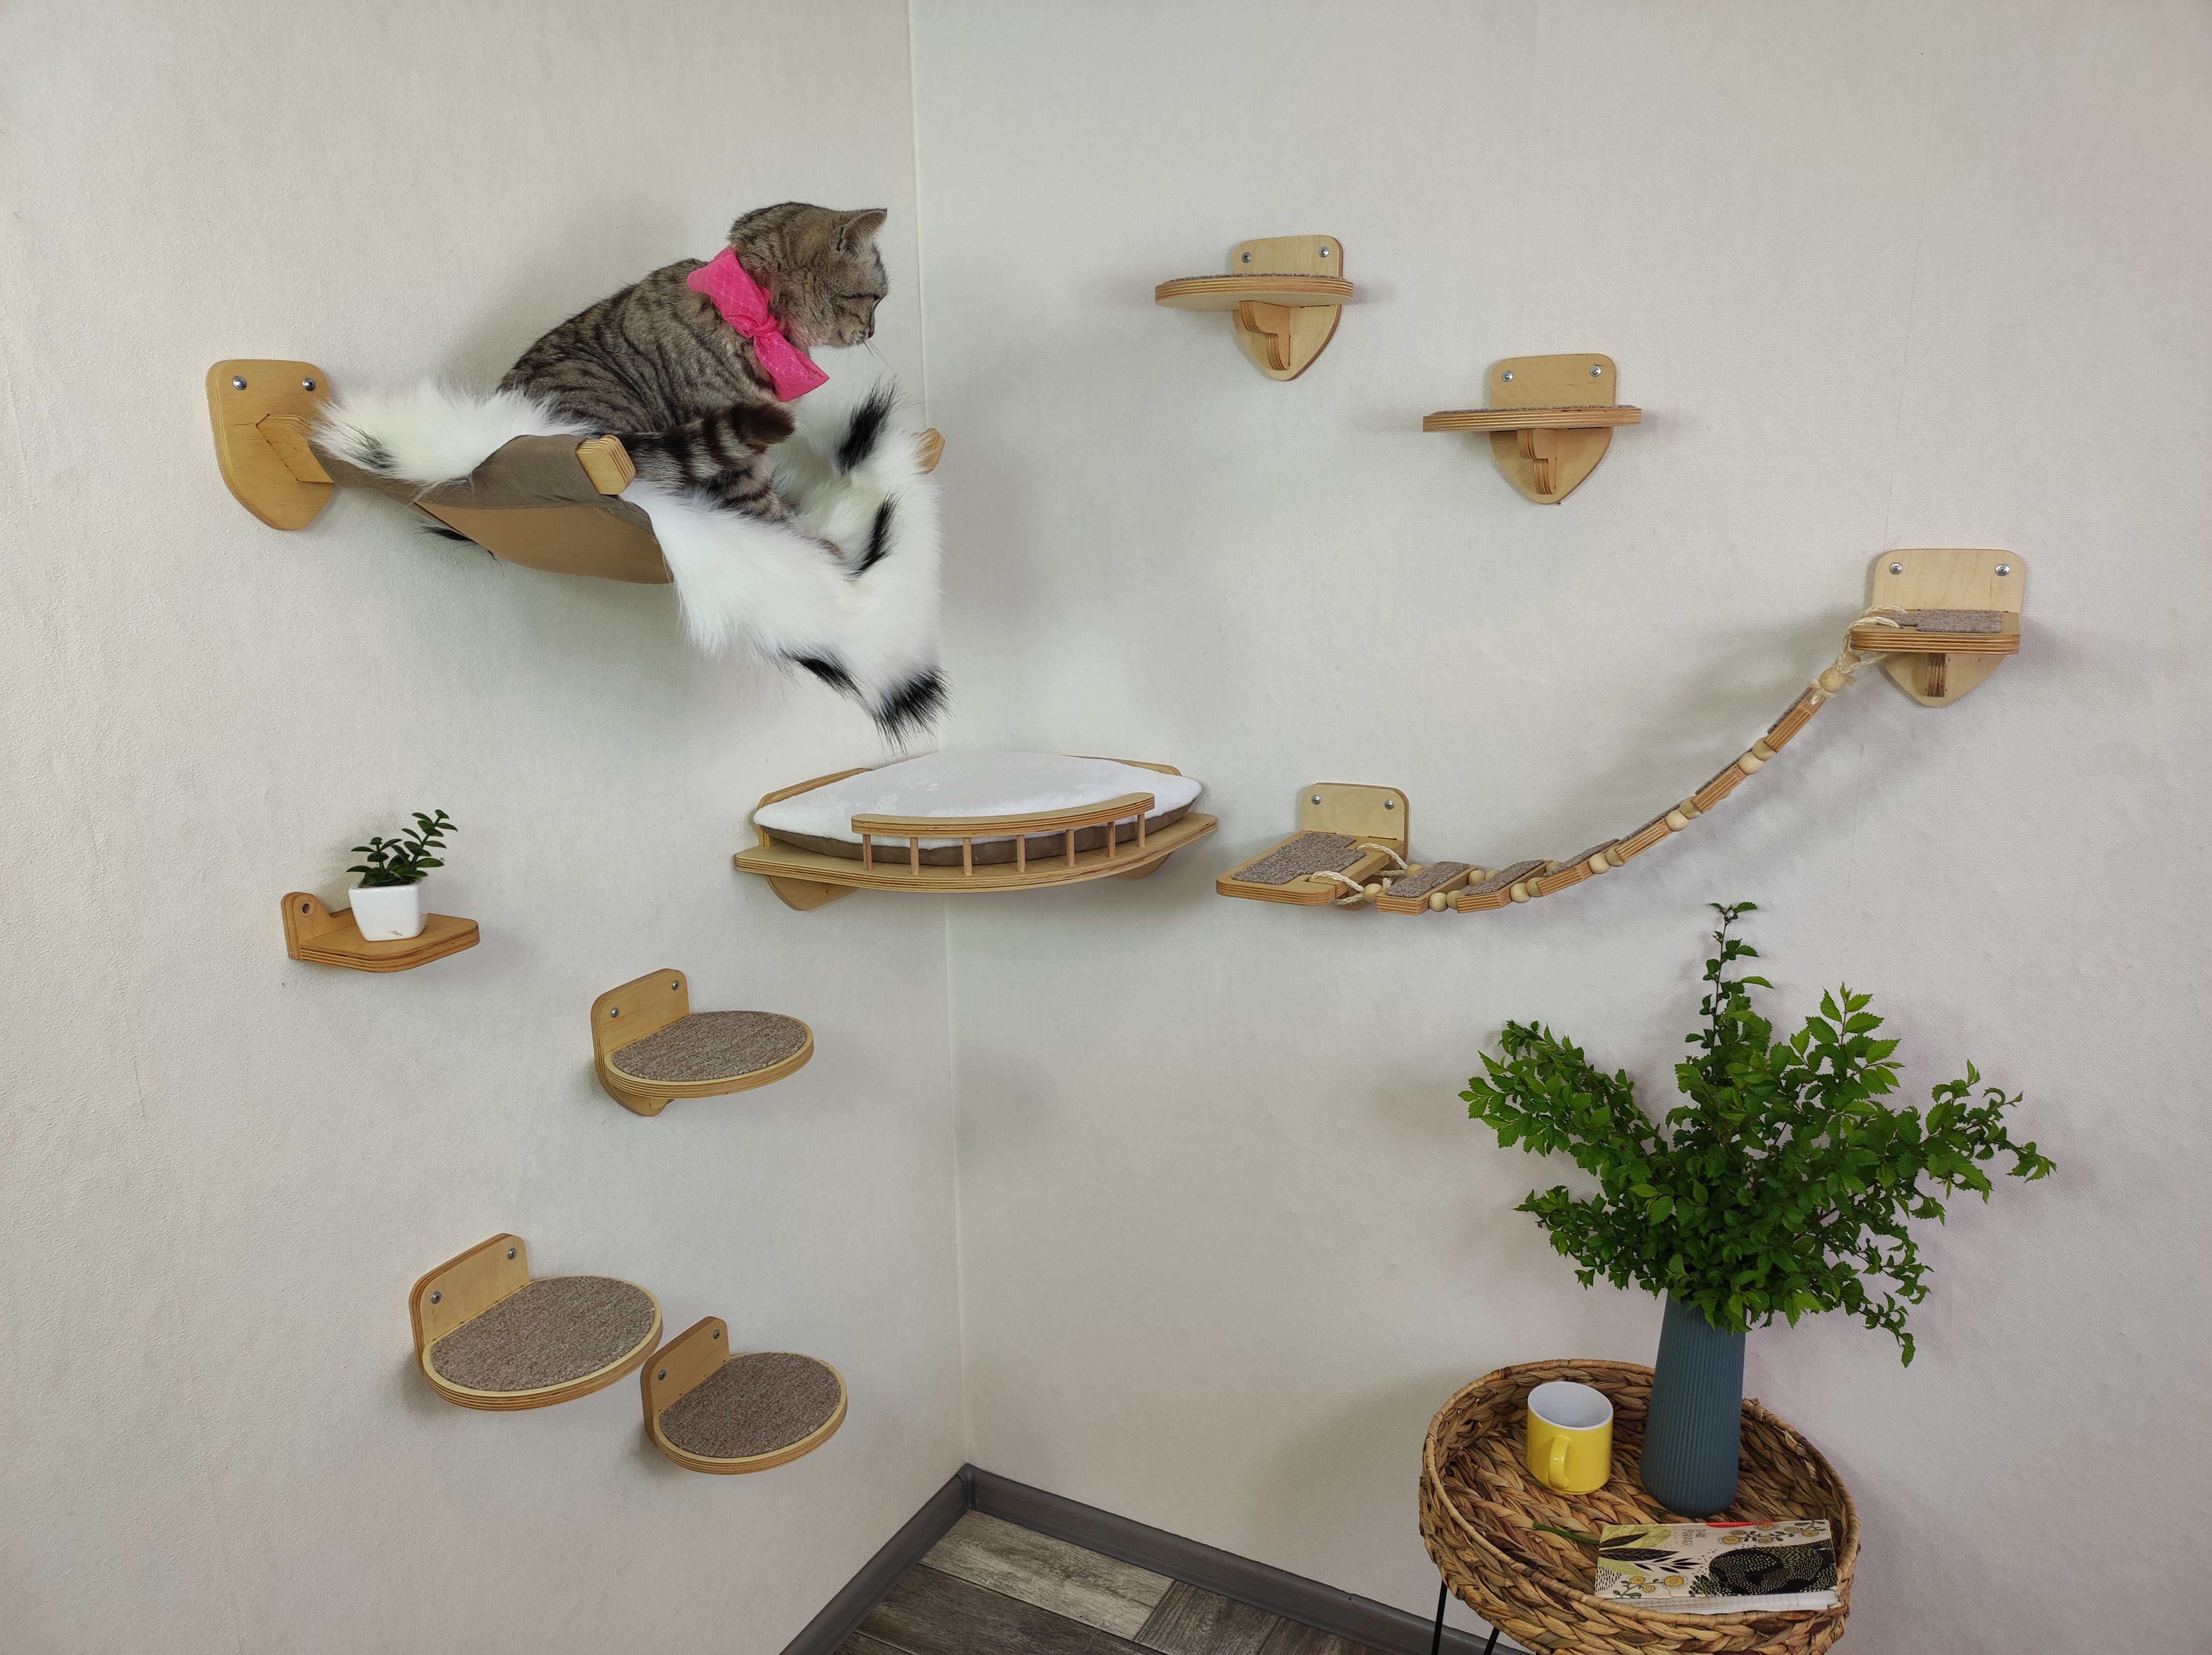 Modern cat furniture set with cat hammock